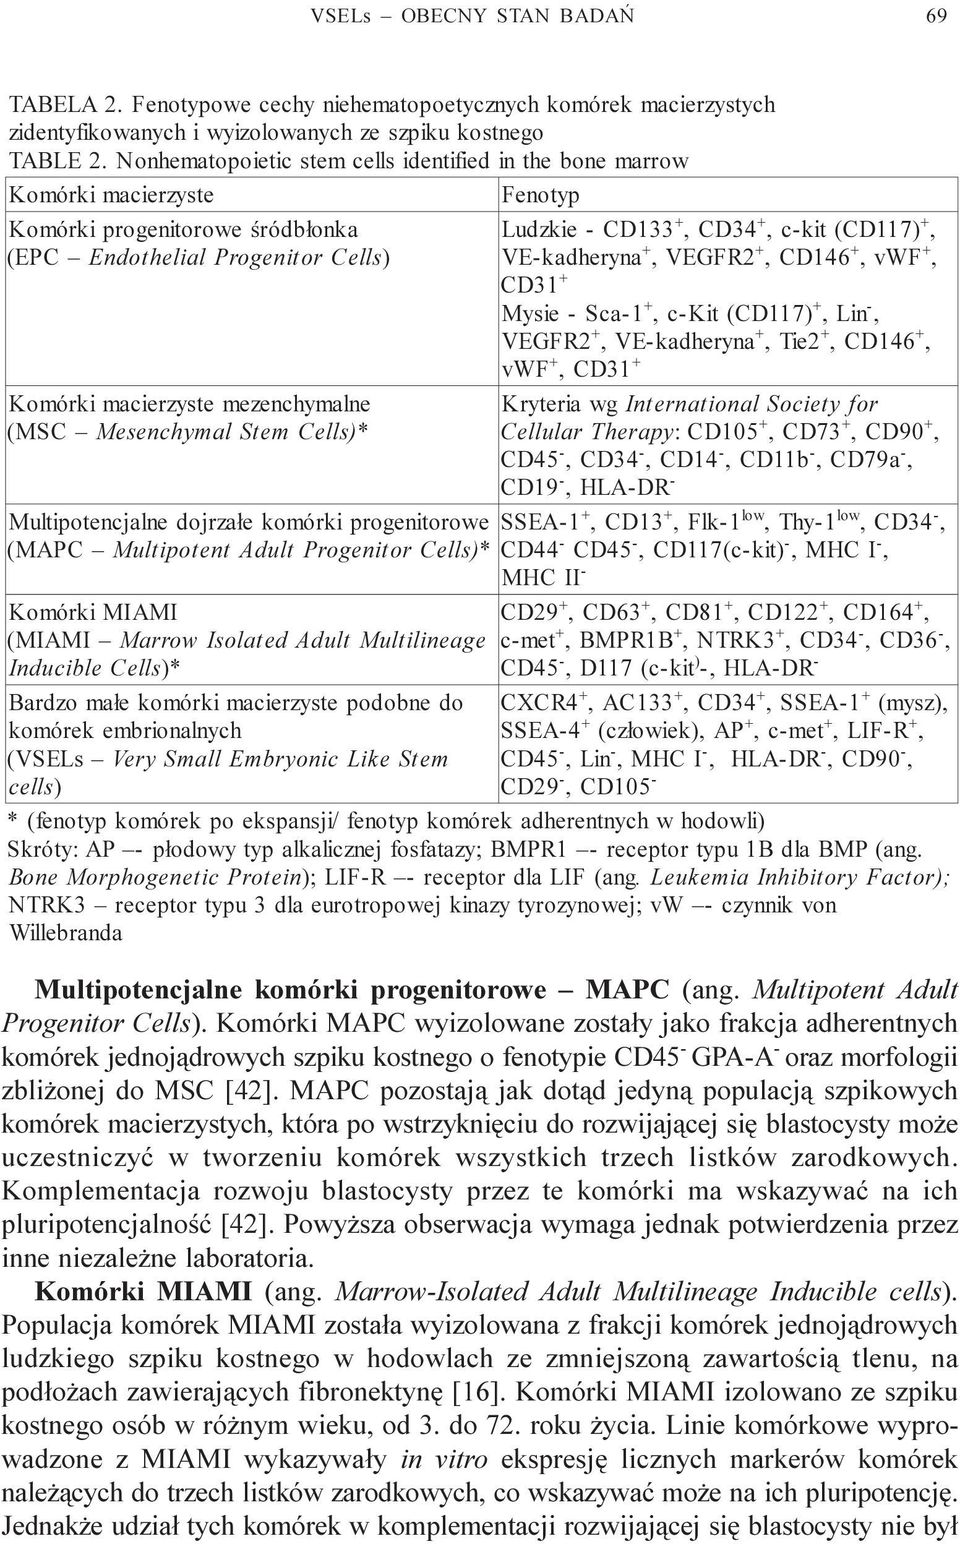 VE-kadheryna + + + VEGFR2 CD146 vwf + CD31 + + M ysie - Sca-1 c-kit (CD117) Lin + + + VEGFR2 VE-kadheryna Tie2 CD146 + + vwf CD31 Komórki macierzyste mezenchymalne ( MSC M esenchymal Stem Cells) *